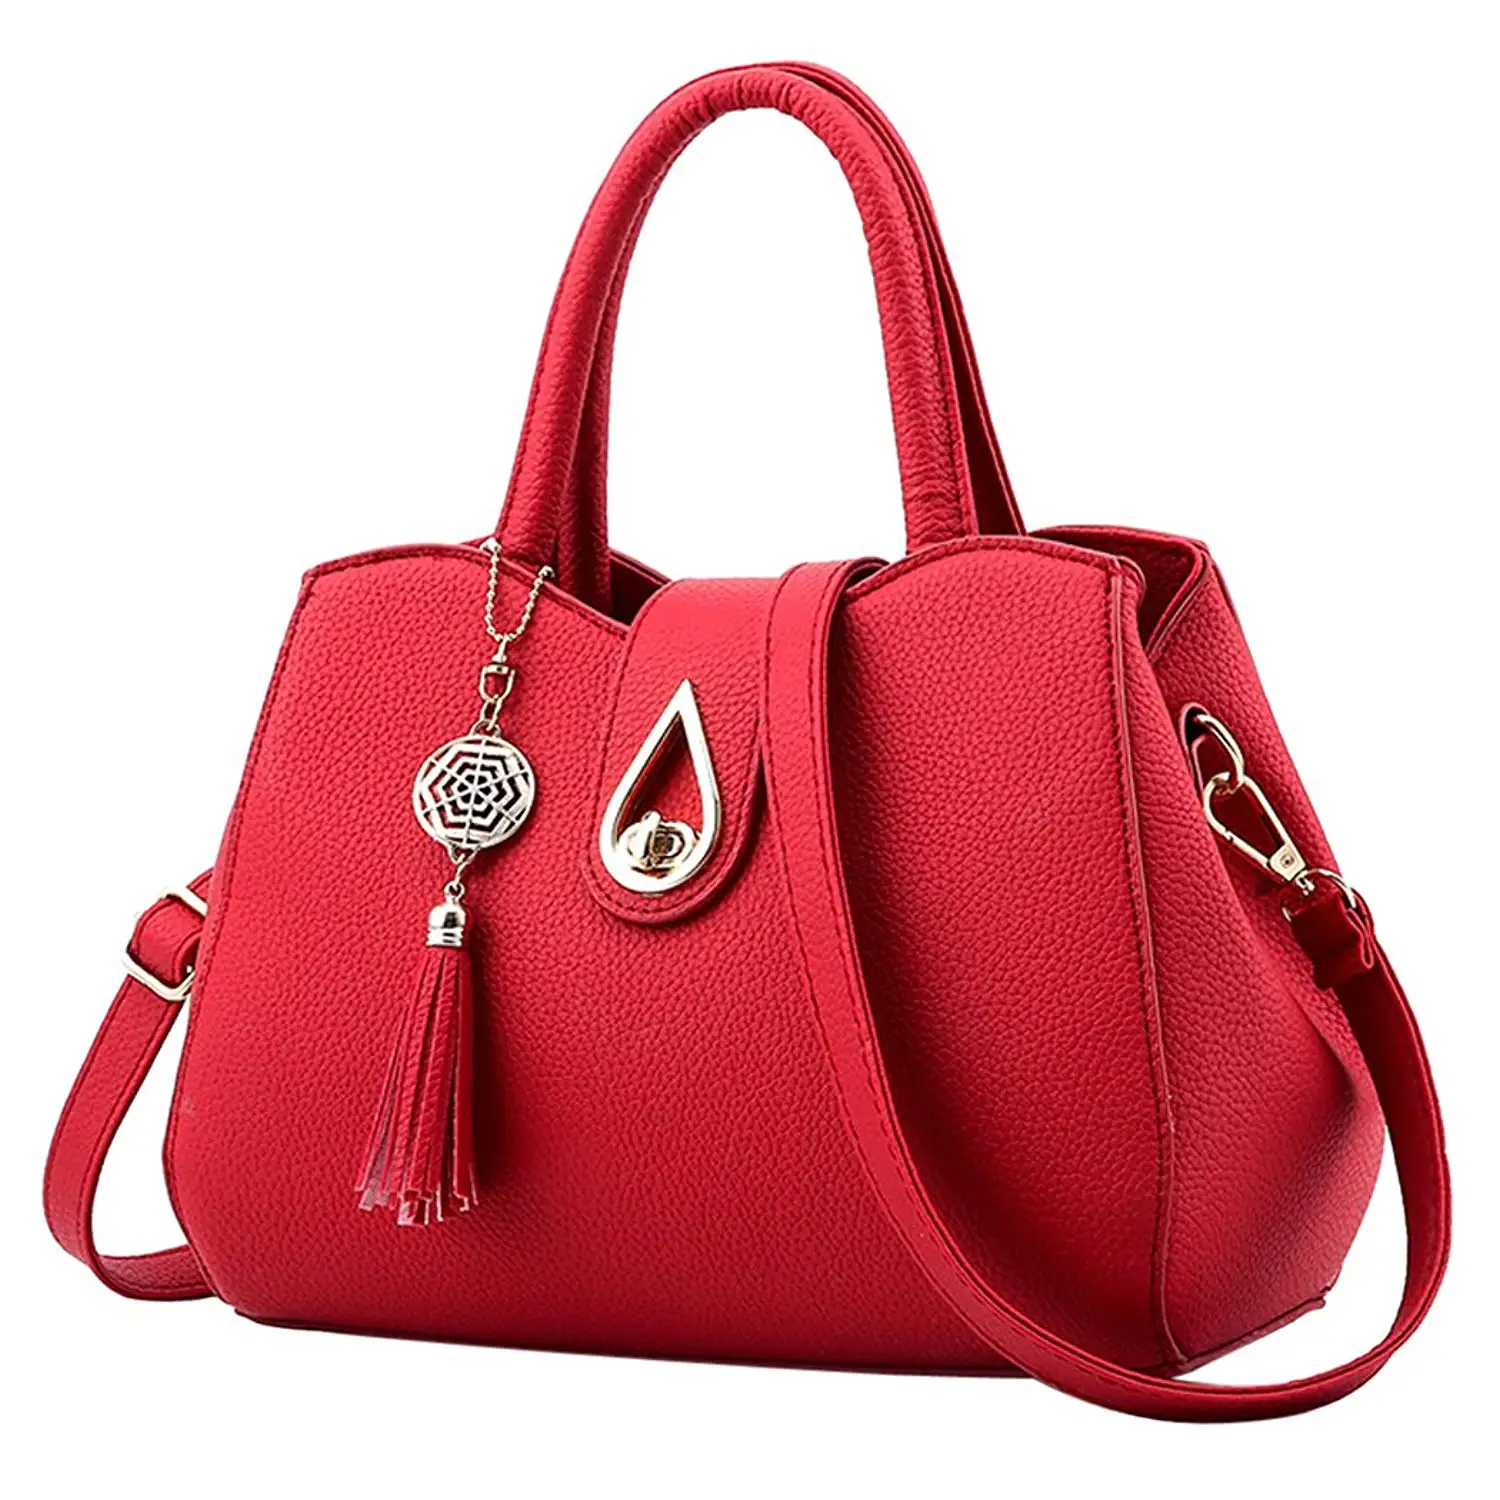 Buy Handbags for Women - Bageek Satchel Bag Vogue Top Handle Bag PU ...